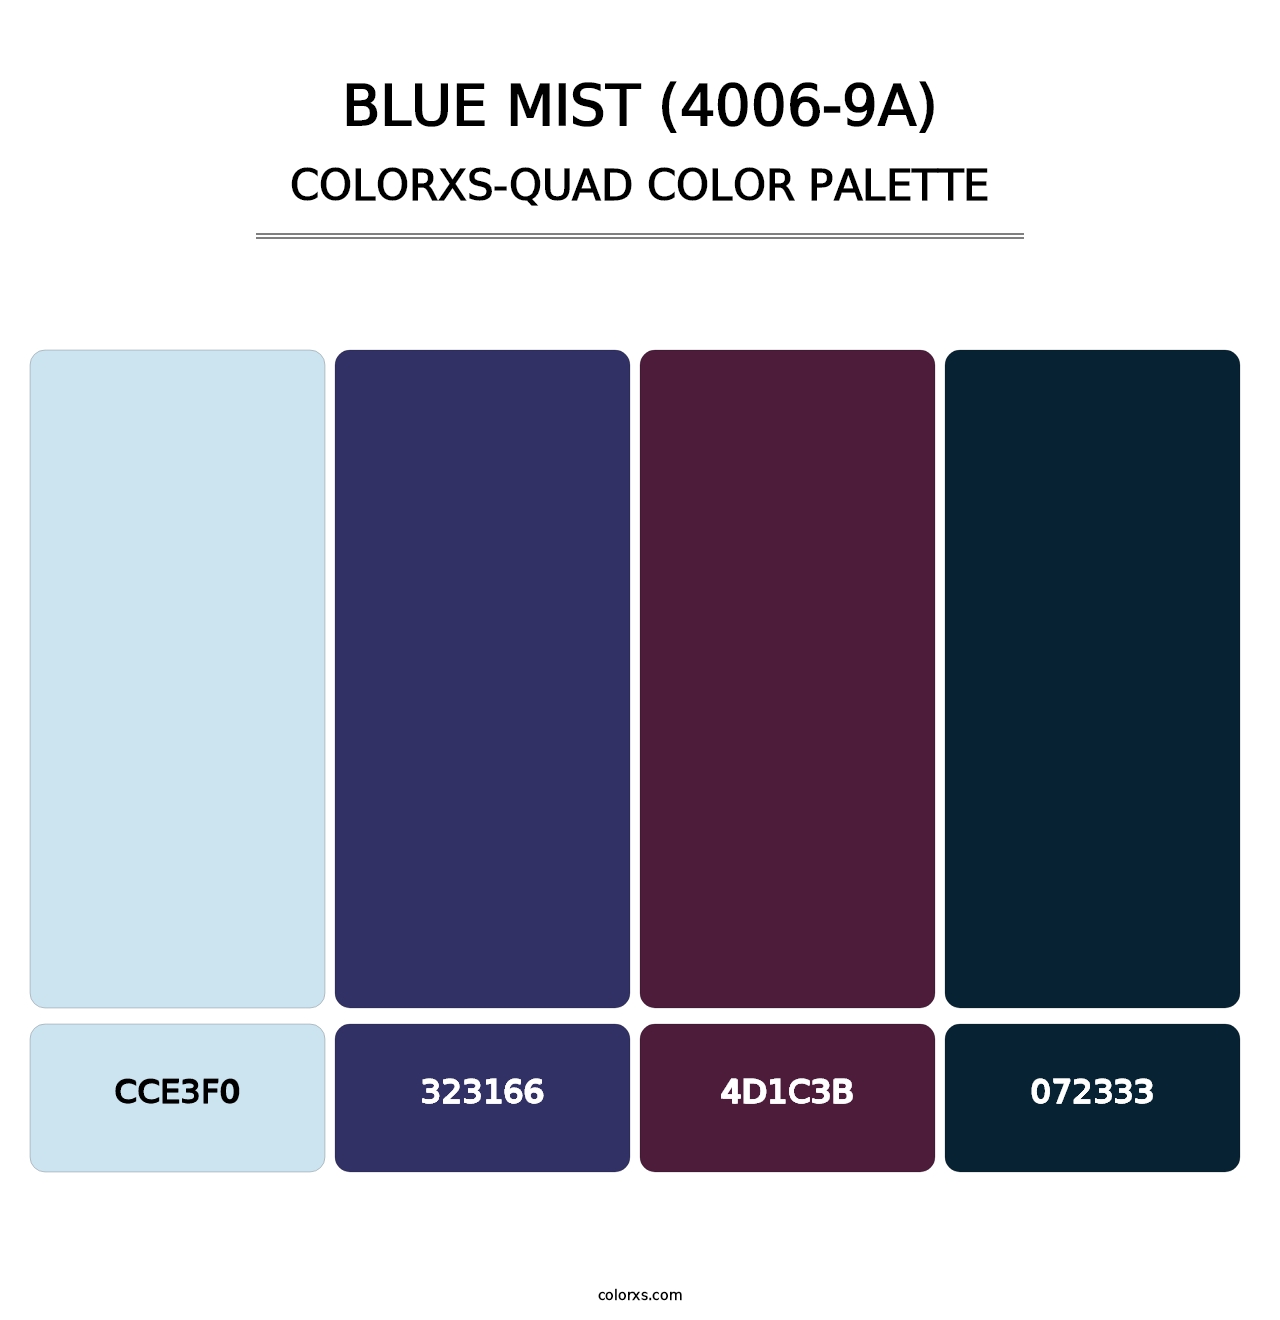 Blue Mist (4006-9A) - Colorxs Quad Palette